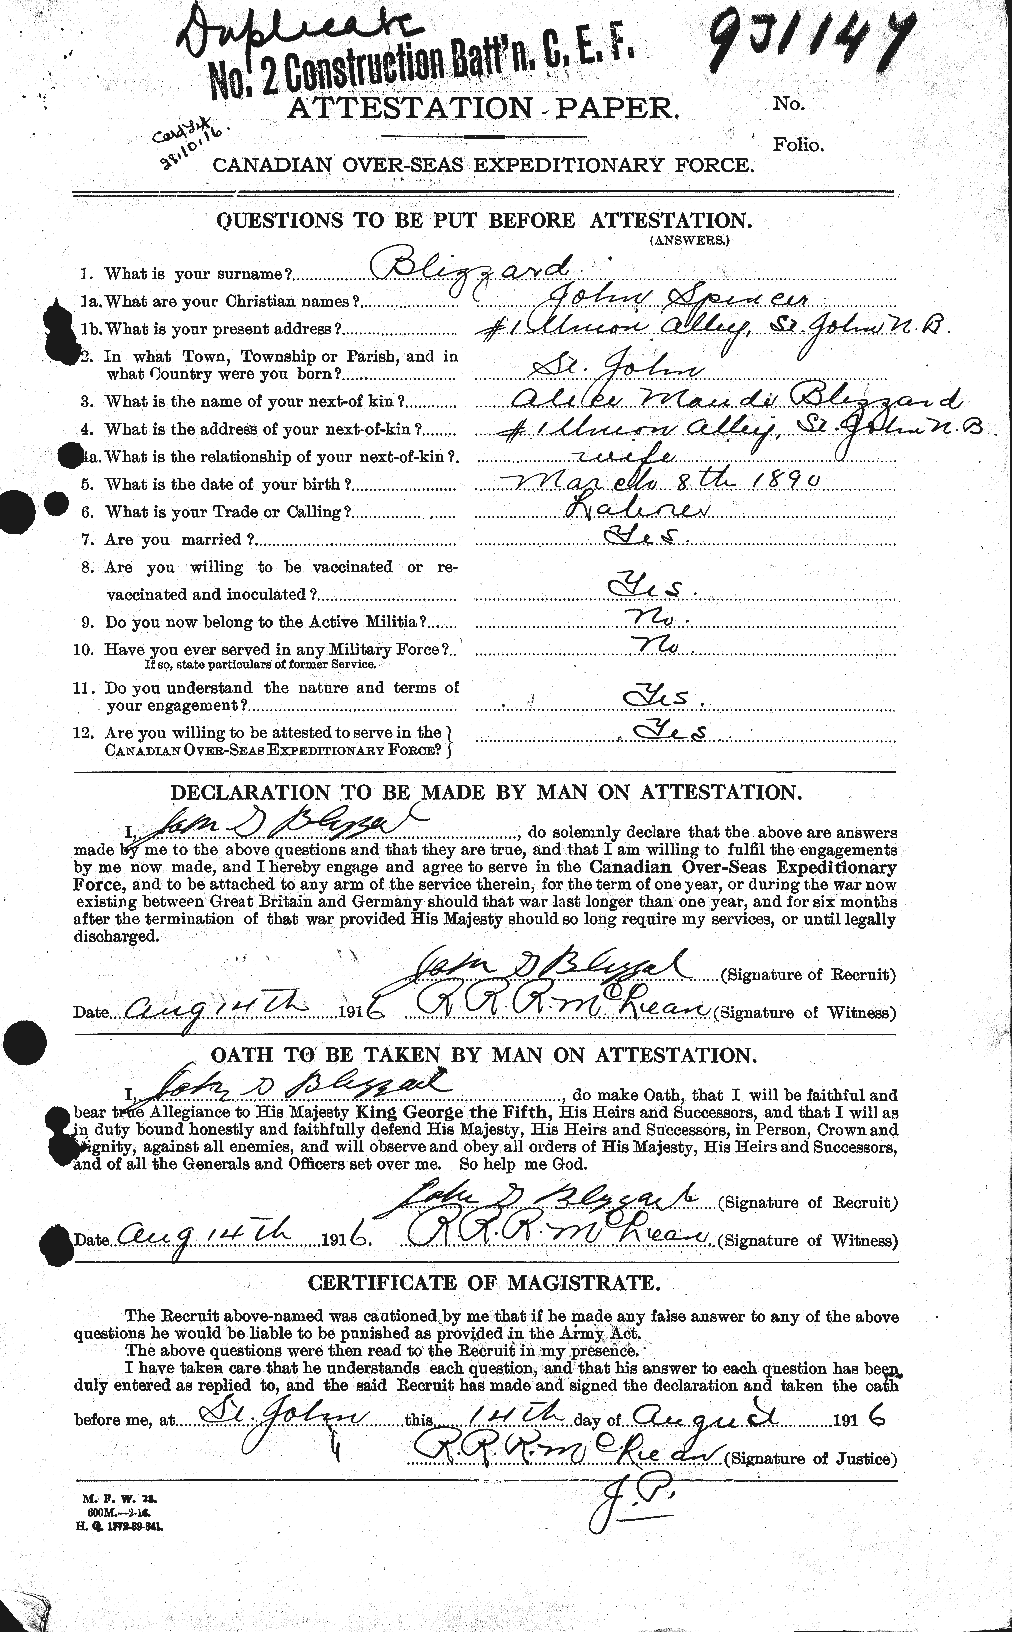 Dossiers du Personnel de la Première Guerre mondiale - CEC 248401a